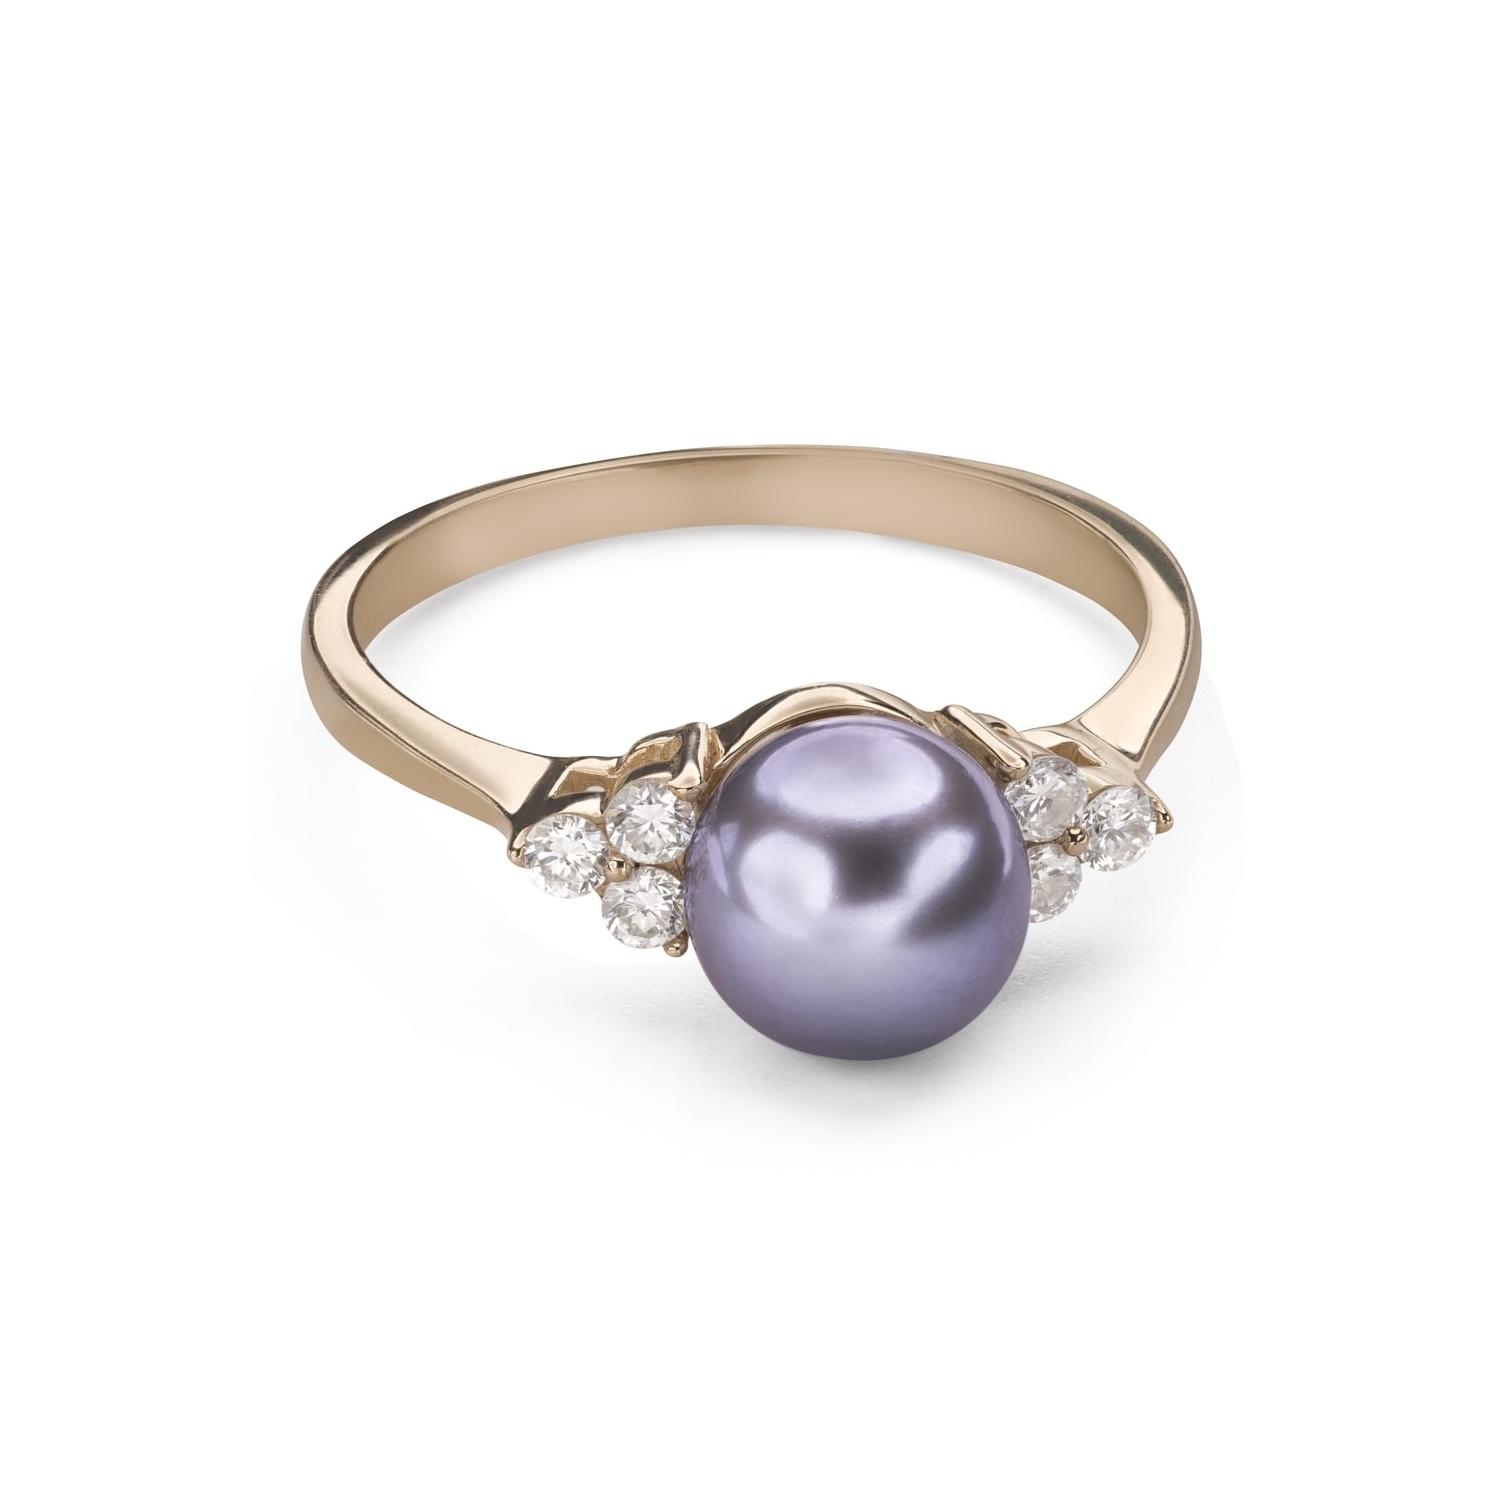 Помолвочное кольцо с драгоценными камнями "Жемчуг  9"